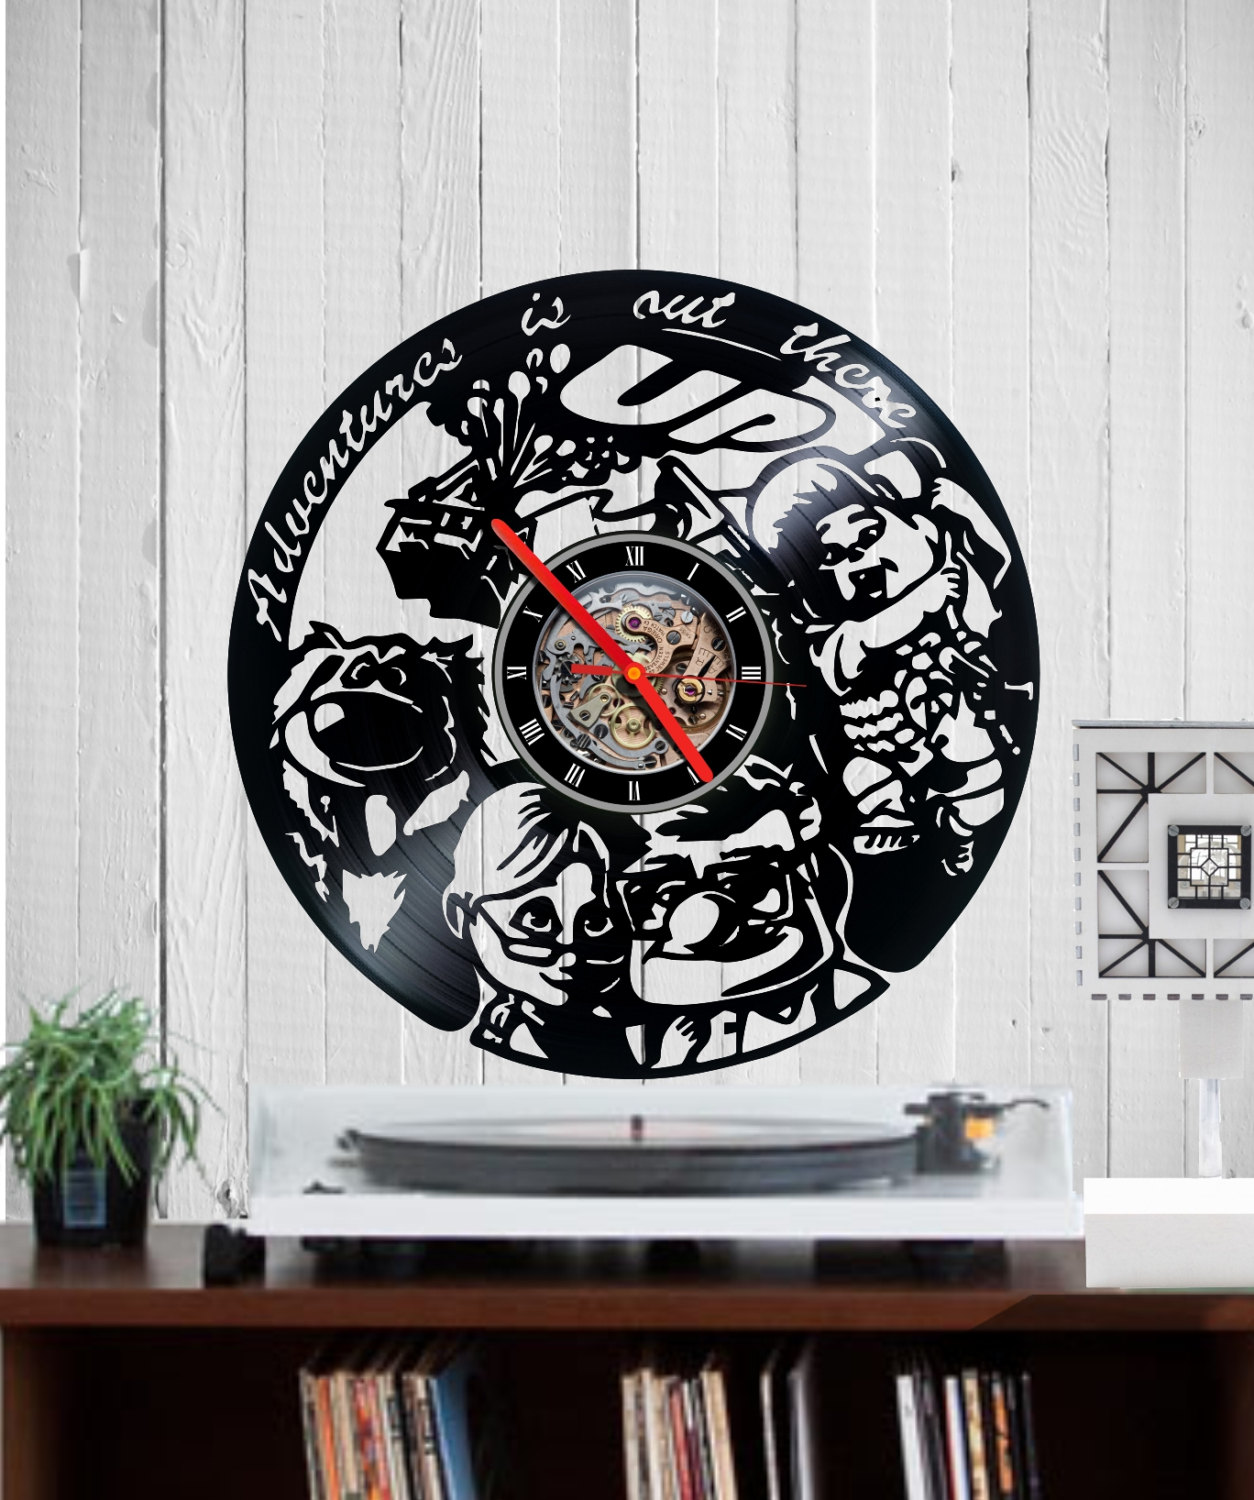 Vinyl Art Home Decor Vinyl Clock Isley Brothers Original Gift Idea Unique Vinyl Record Wall Clock Exclusive Custom Vinyl Record Clock Handmade Wall Clock 